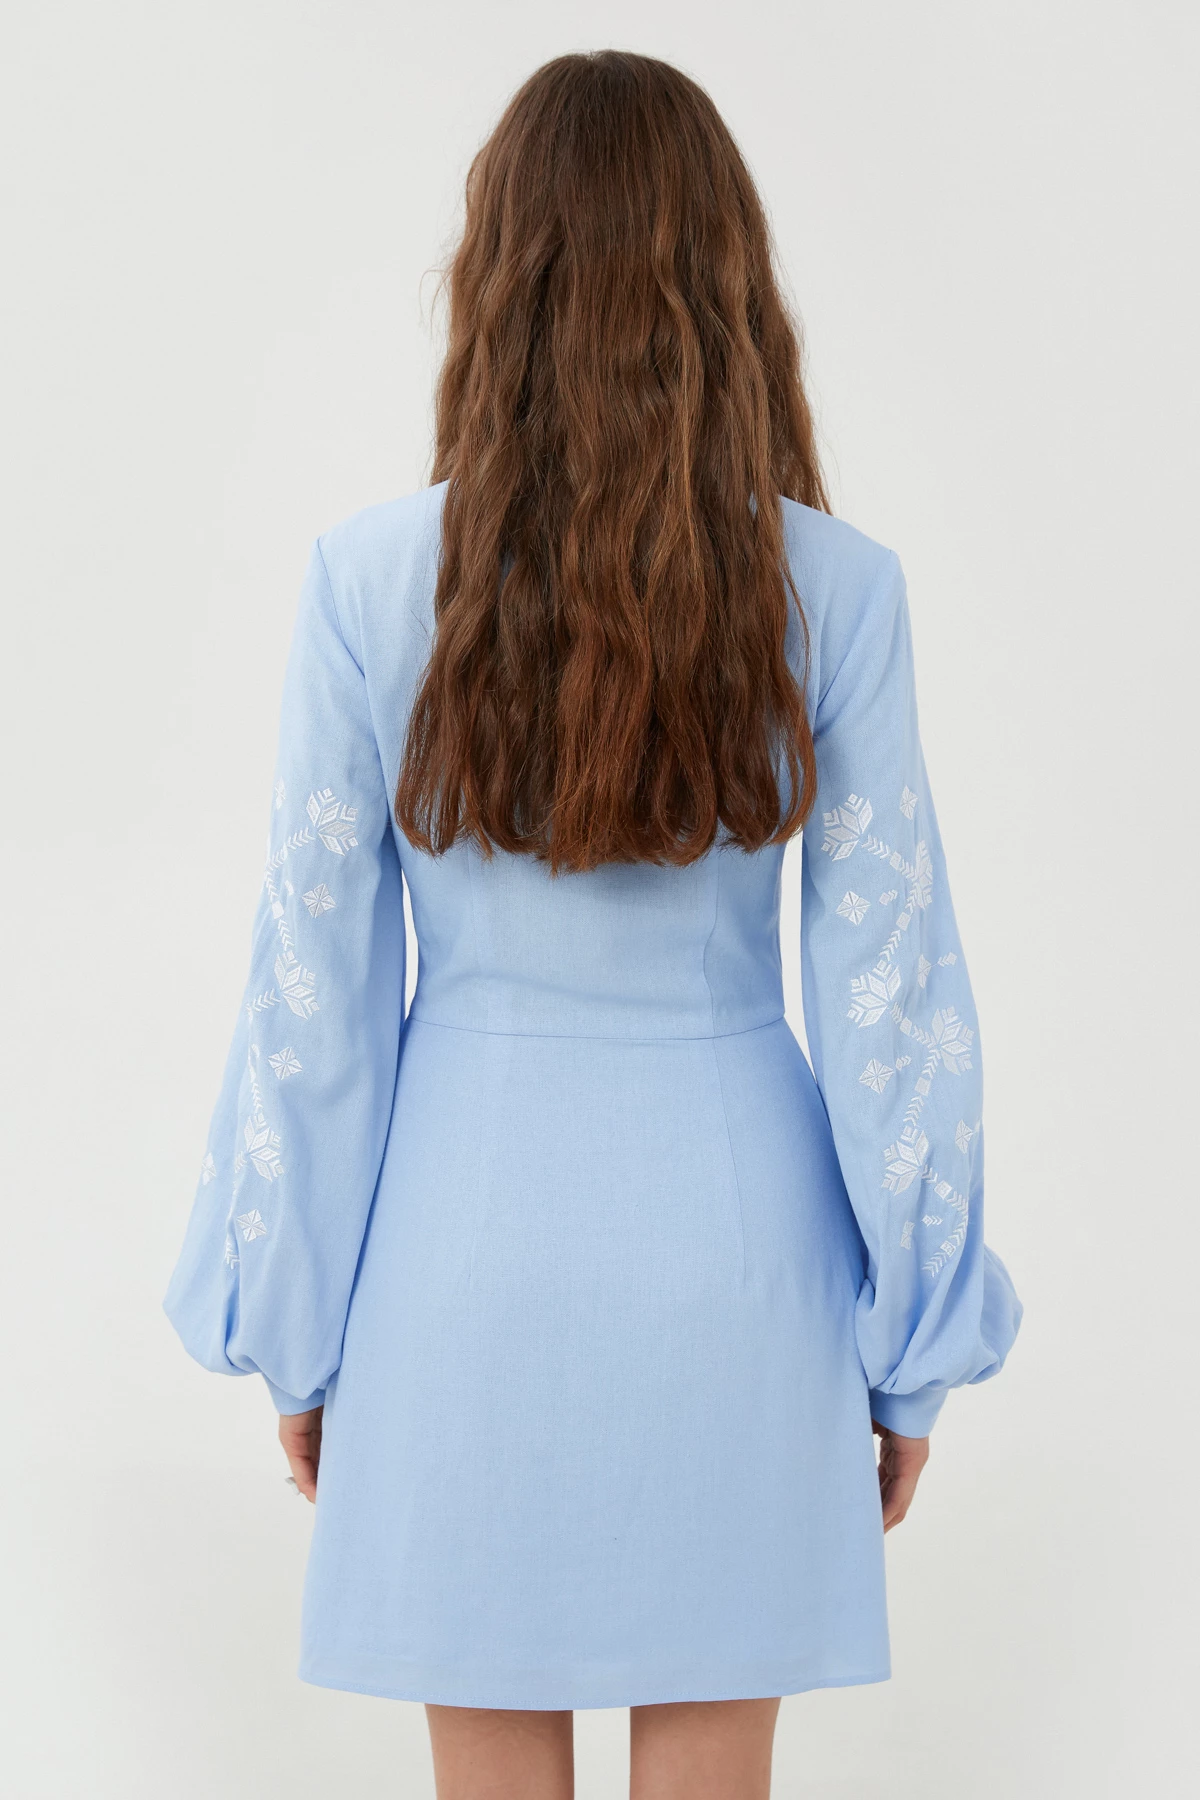 Вишита коротка сукня «Барвінок» з льоном блакитного кольору, фото 5